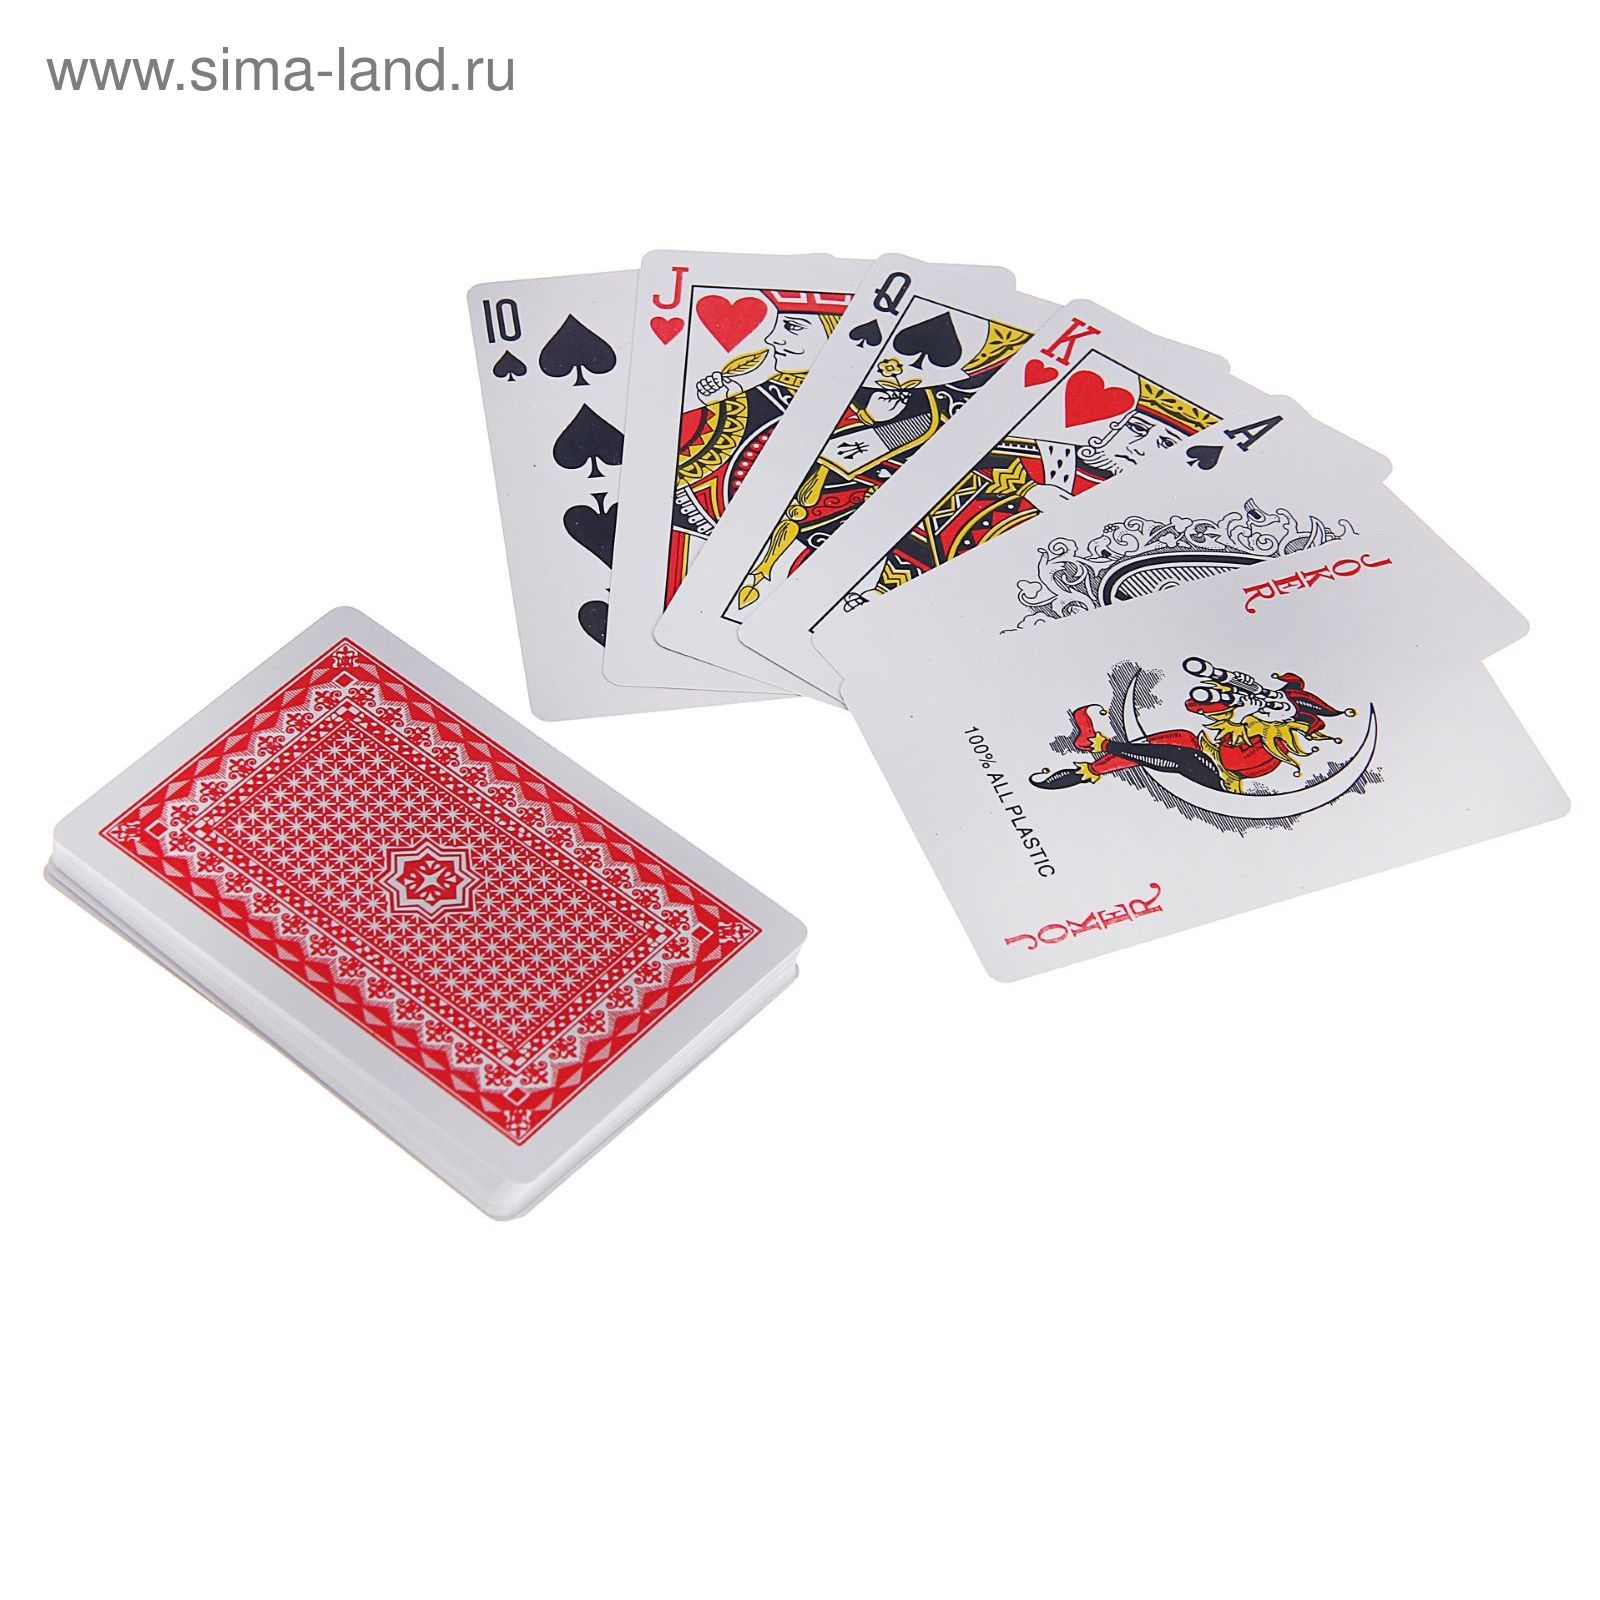 Карты игральные пластиковые Royal, 54 шт., 19 мкм, 8,8 × 5,7 см, пластиковая коробка, микс